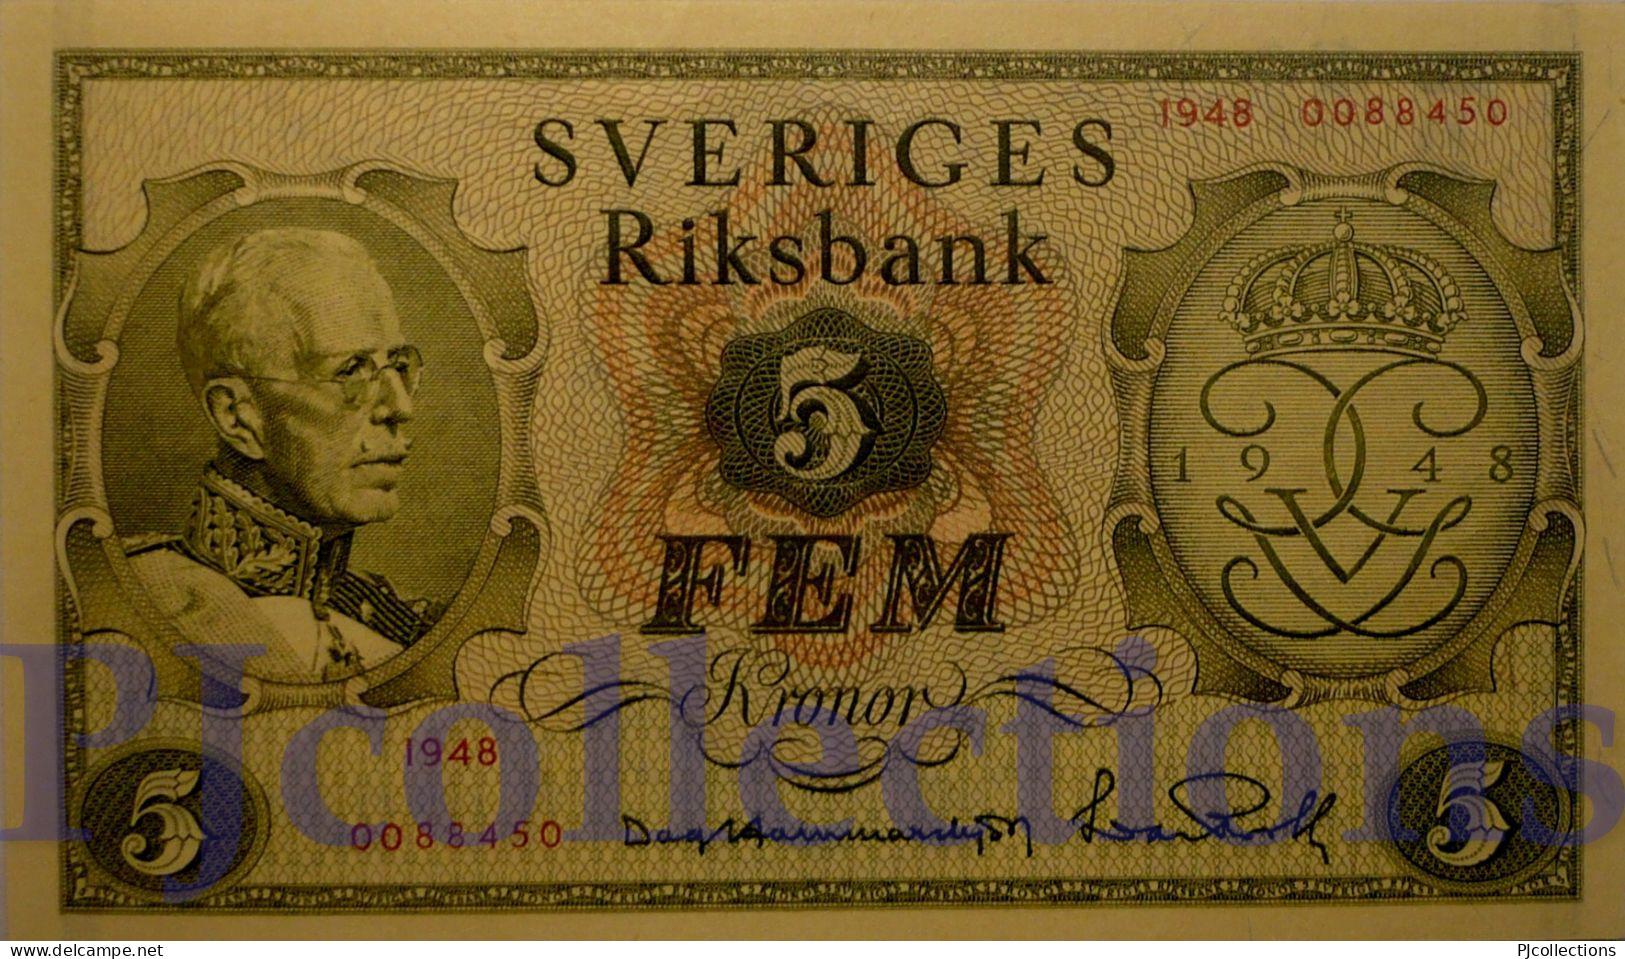 SWEDEN 5 KRONOR 1948 PICK 41a AUNC RARE - Suède